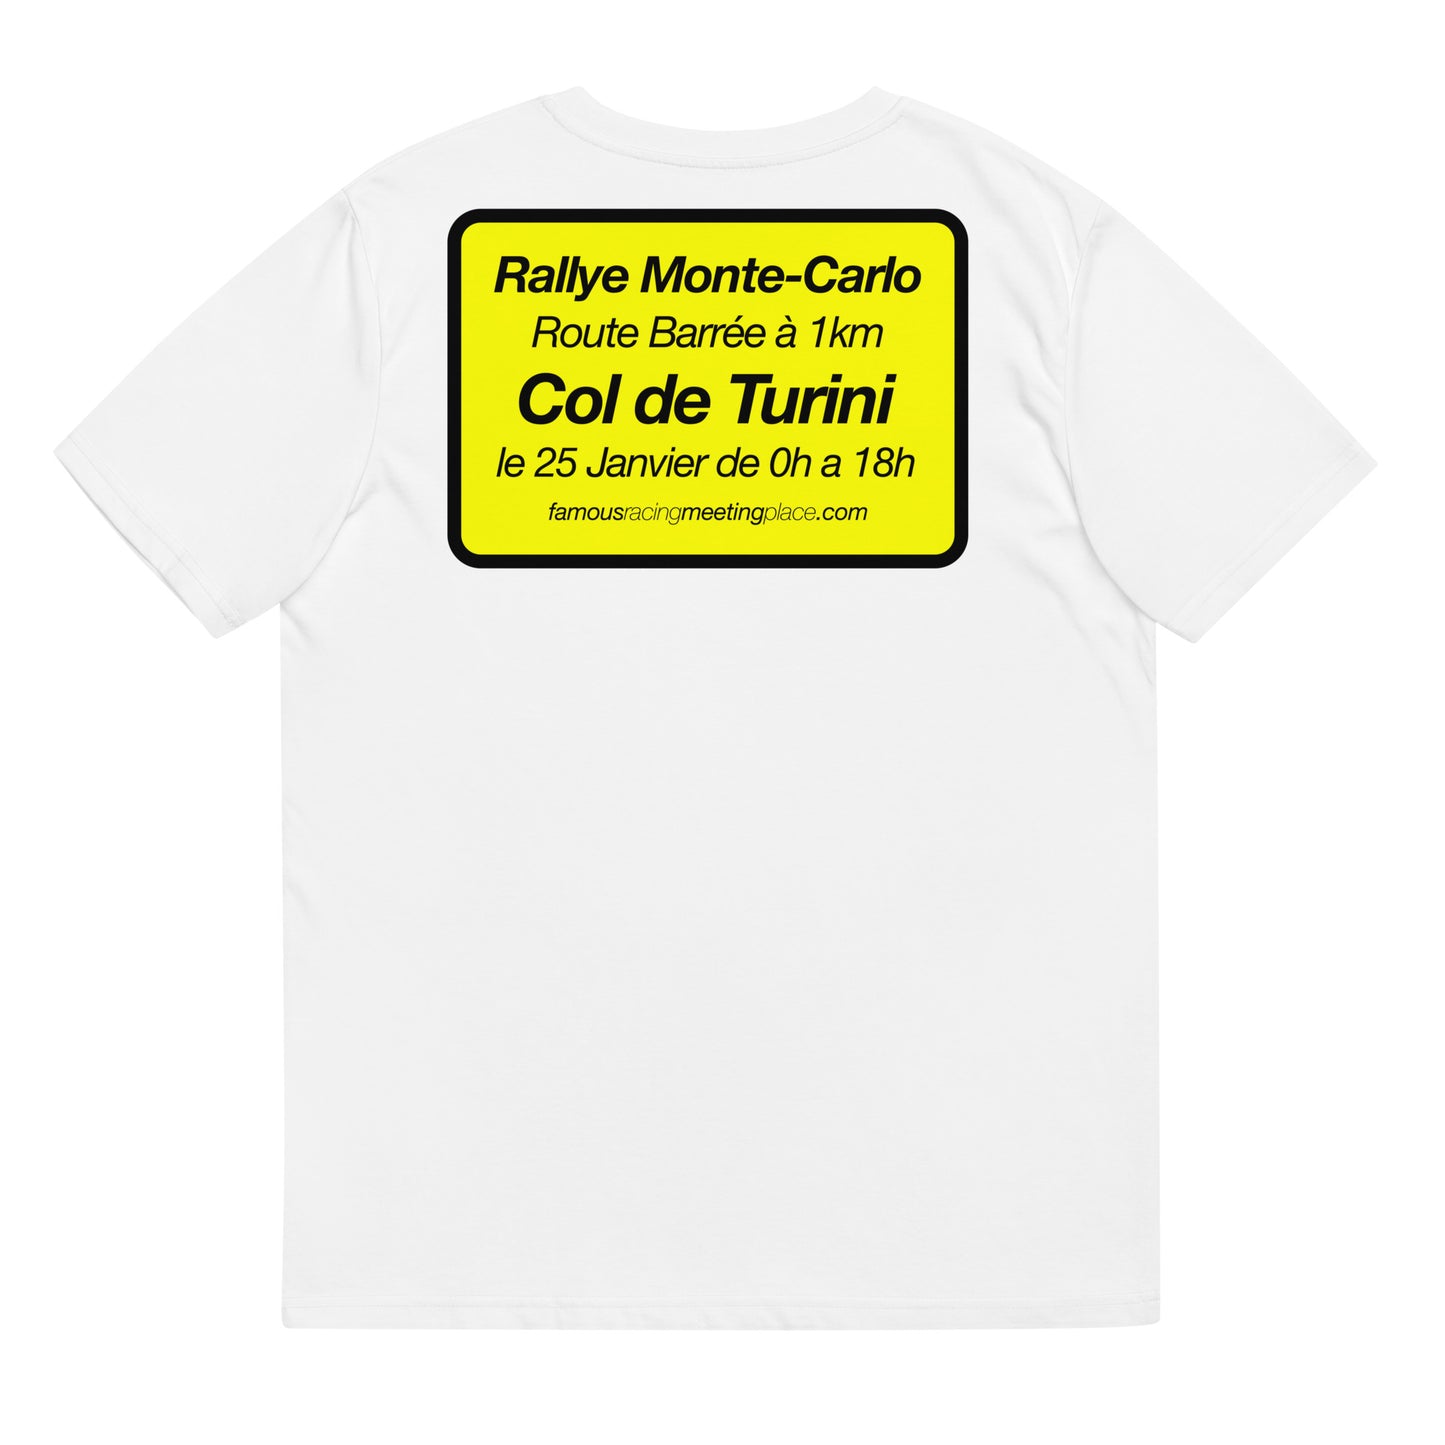 Rallye Monte-Carlo et Col de Turini